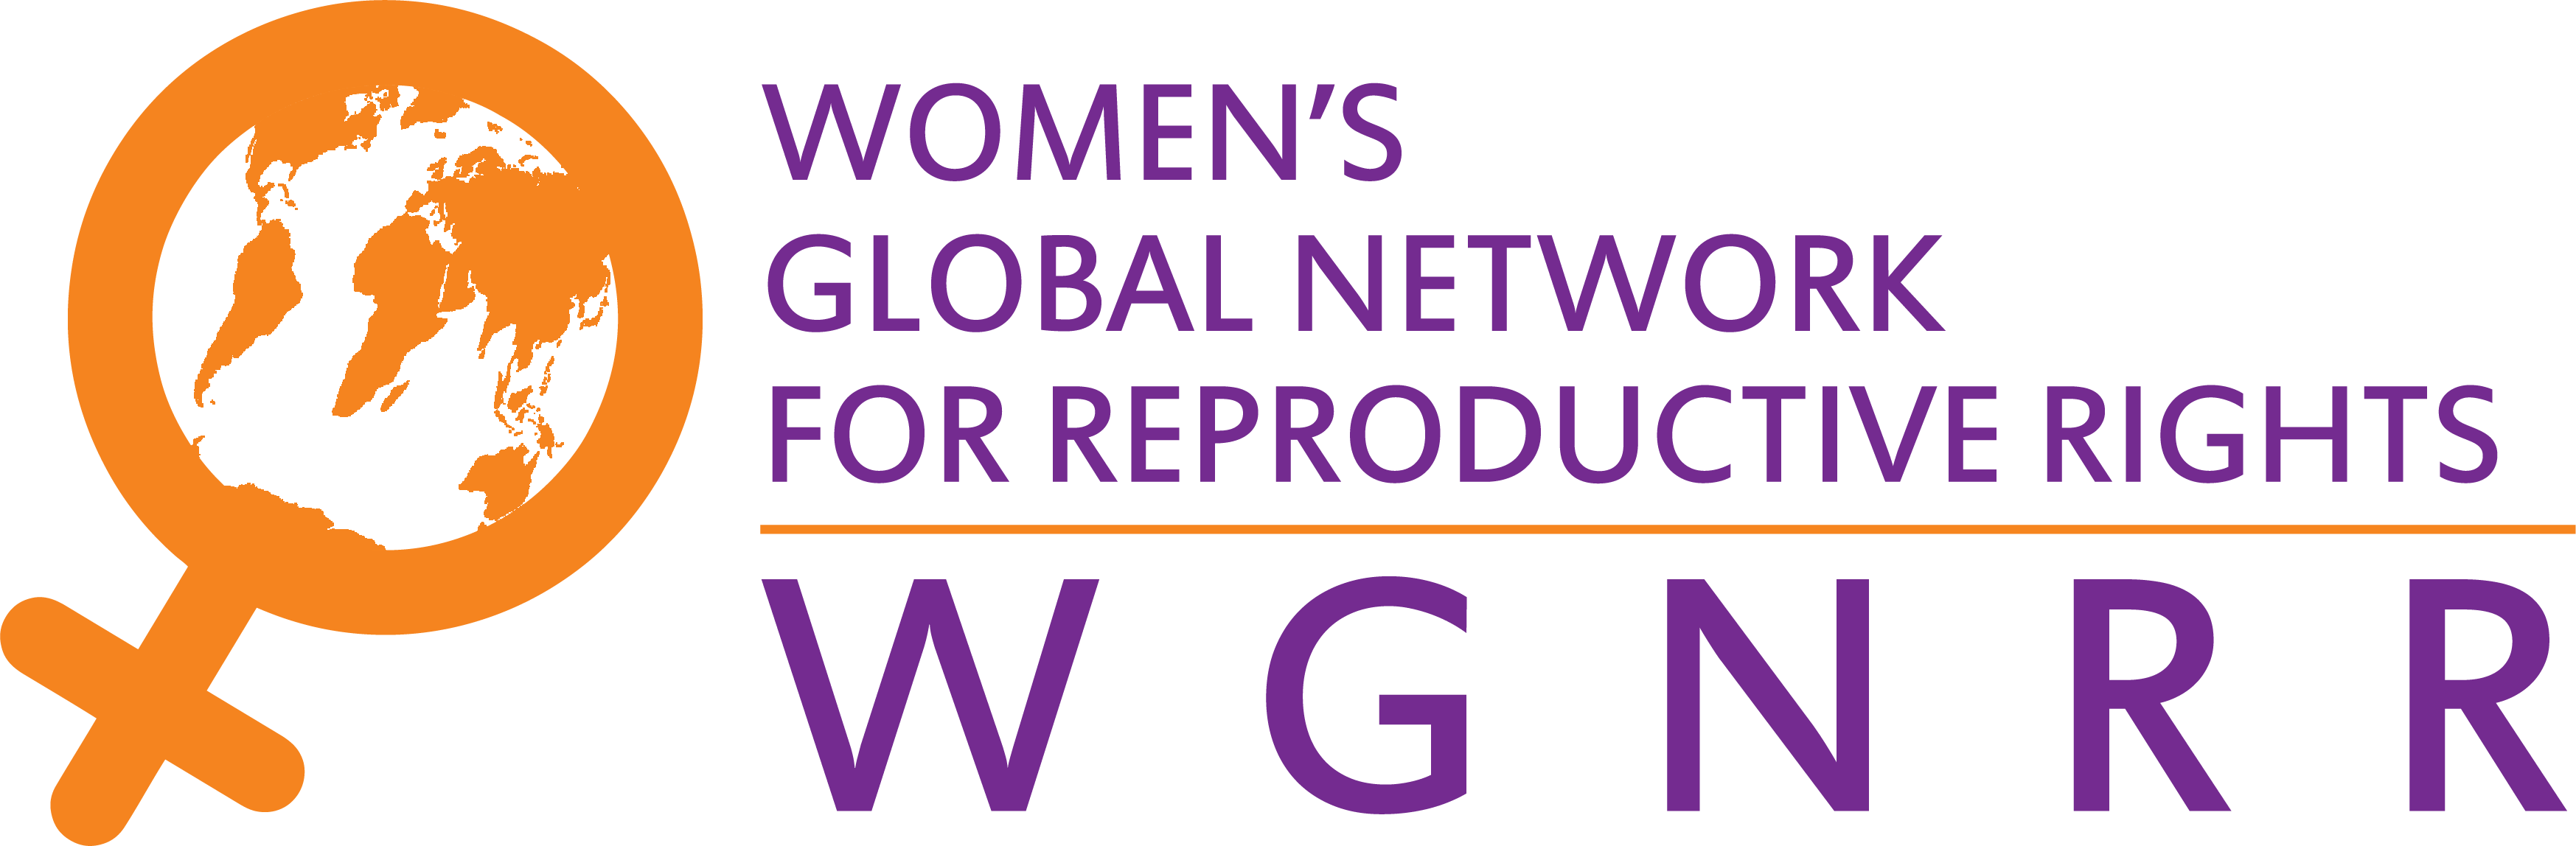 wgnrr-logo